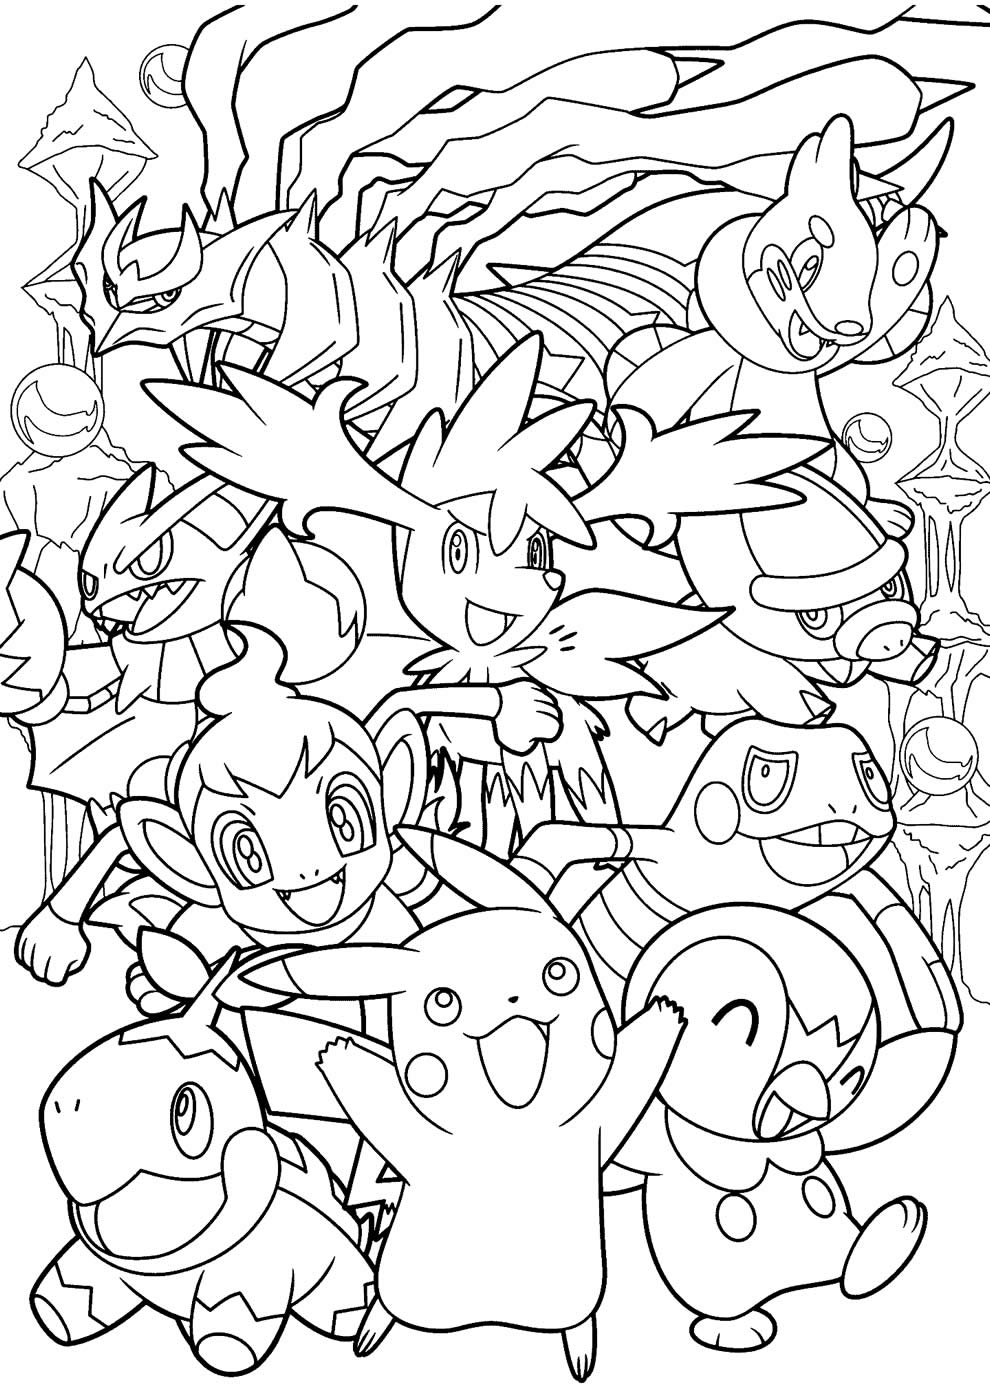 Desenhos do Pokemon para imprimir e colorir  Pokemon para colorir,  Desenhos para colorir pokemon, Pokémon desenho